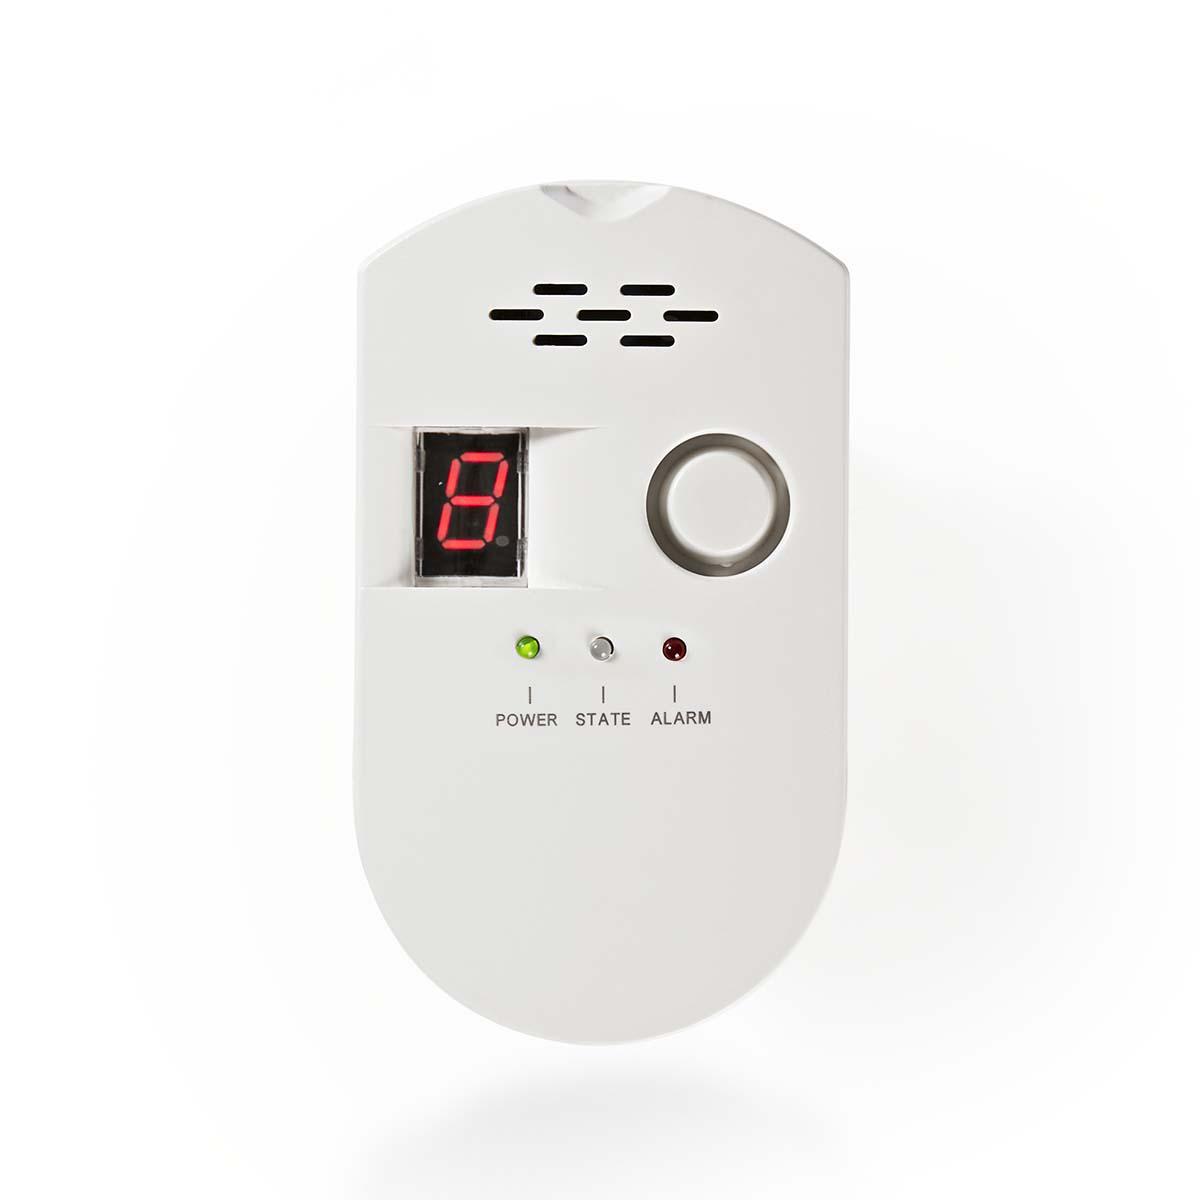 Stylo électrique Sensible Auto-test Son-lumière Alarme Imperméable